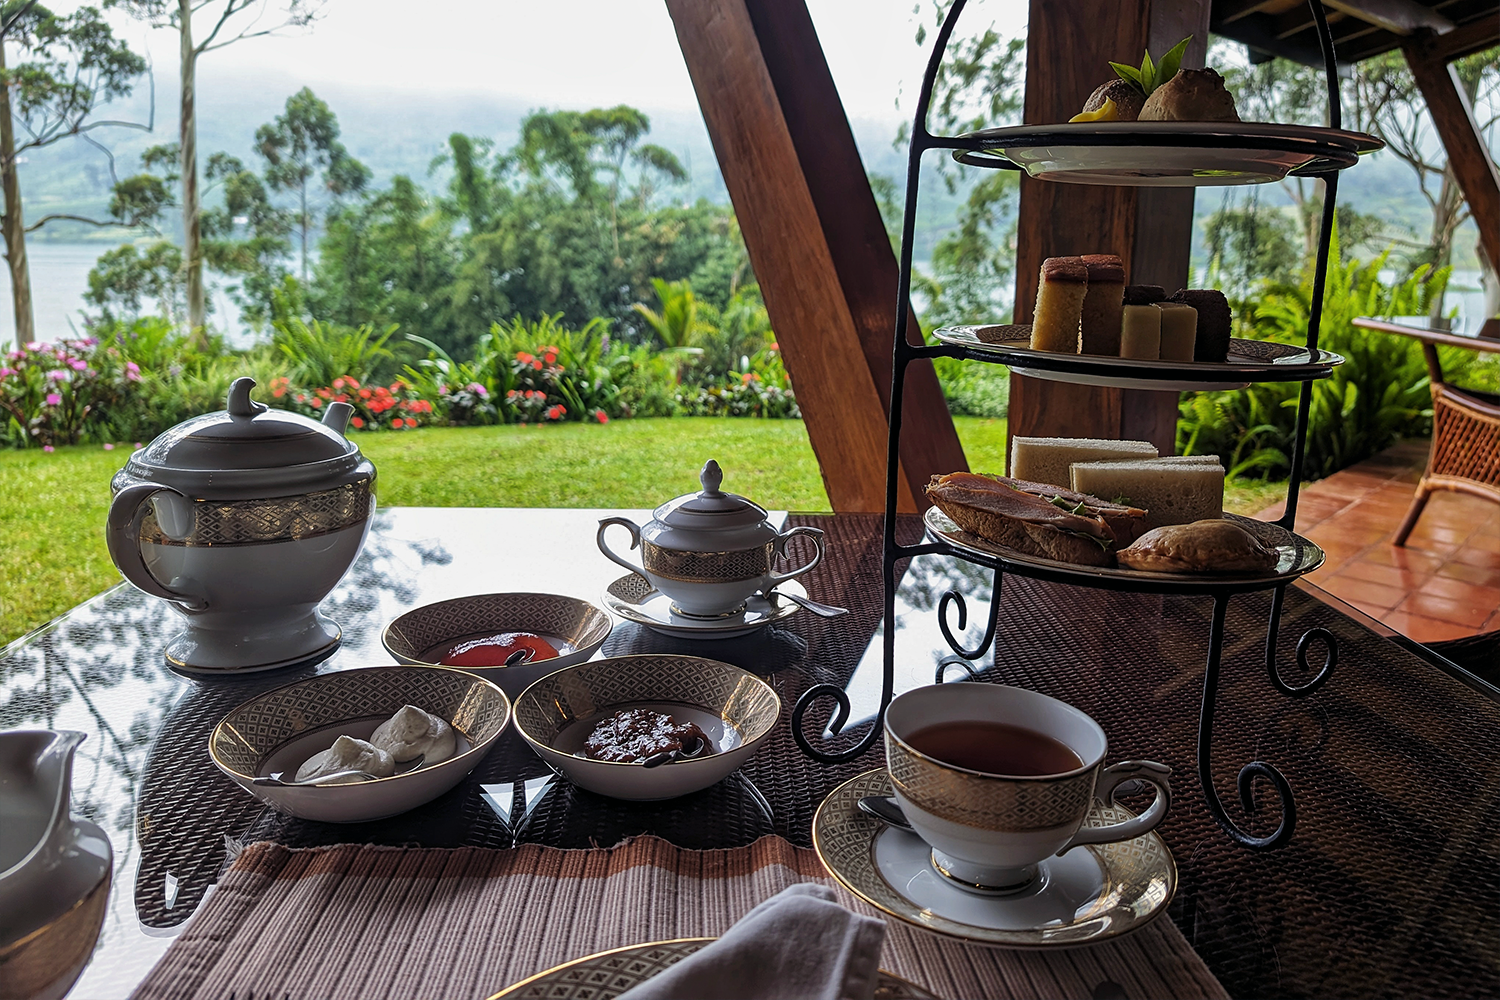 Afternoon tea at Ceylon Tea Trails